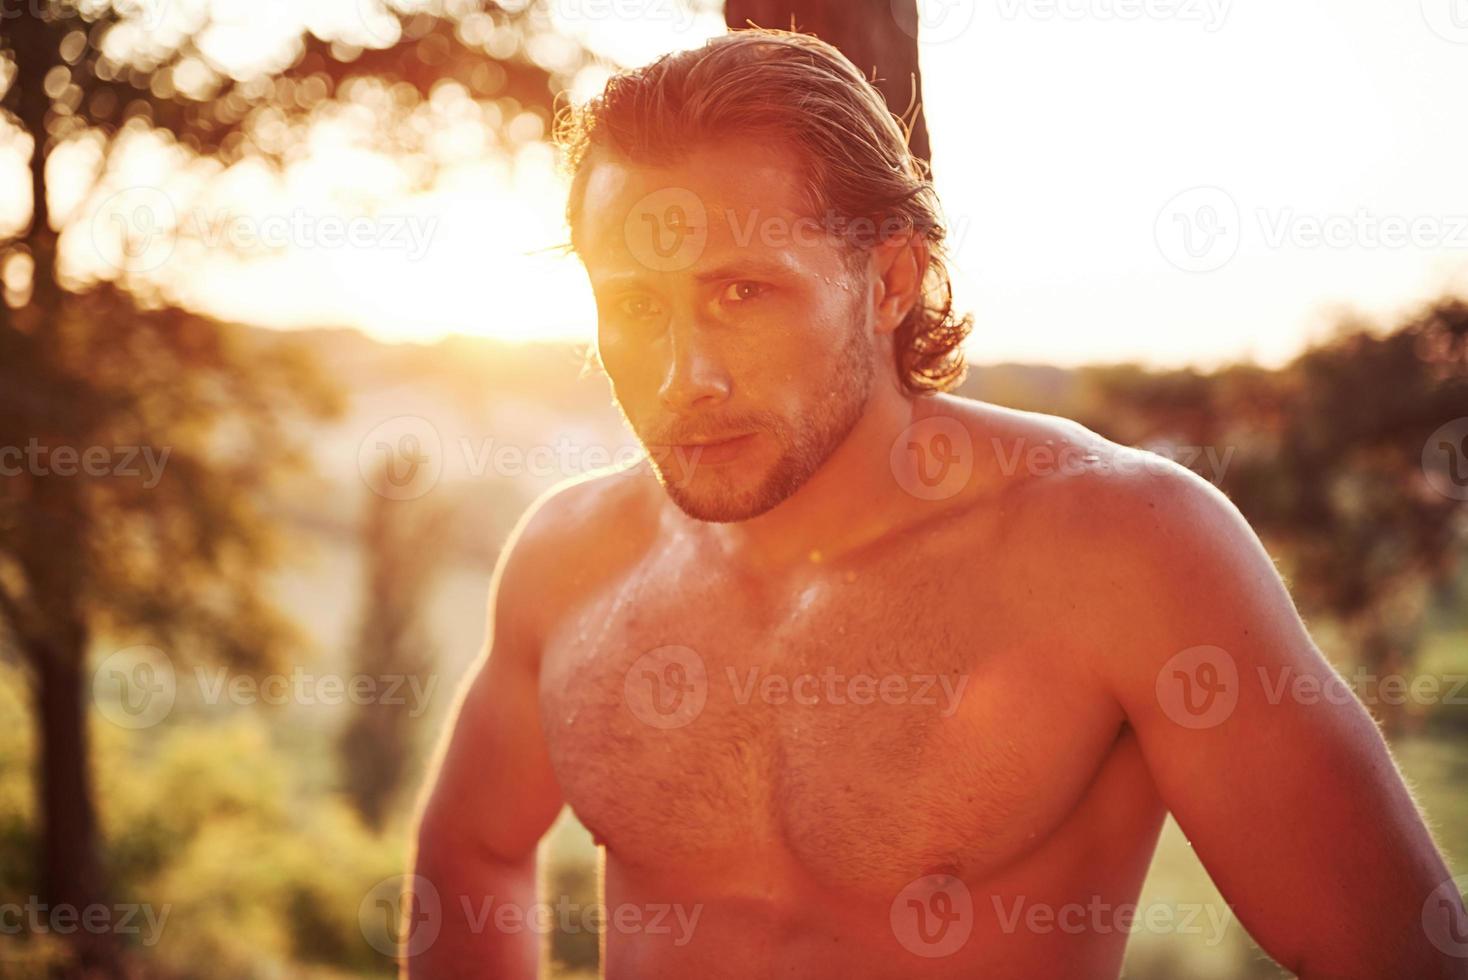 olhar sério e confiante. homem bonito sem camisa com tipo de corpo musculoso está na floresta durante o dia foto